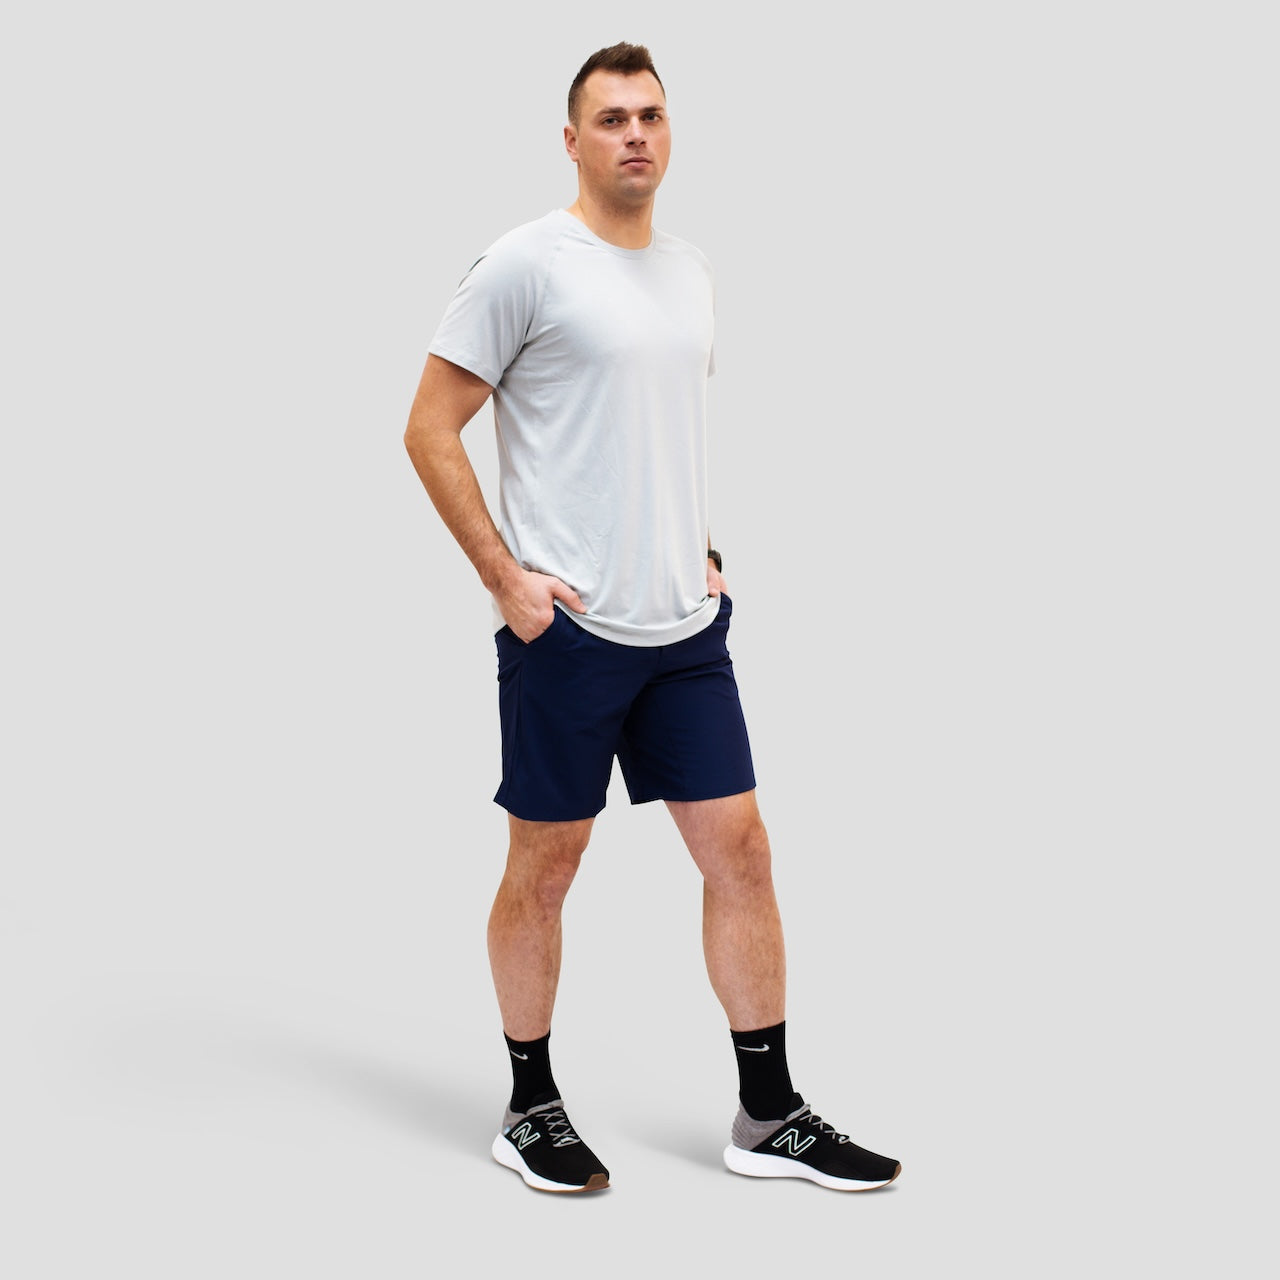 Slate Pro Performance T-Shirt for Tall Slim Men